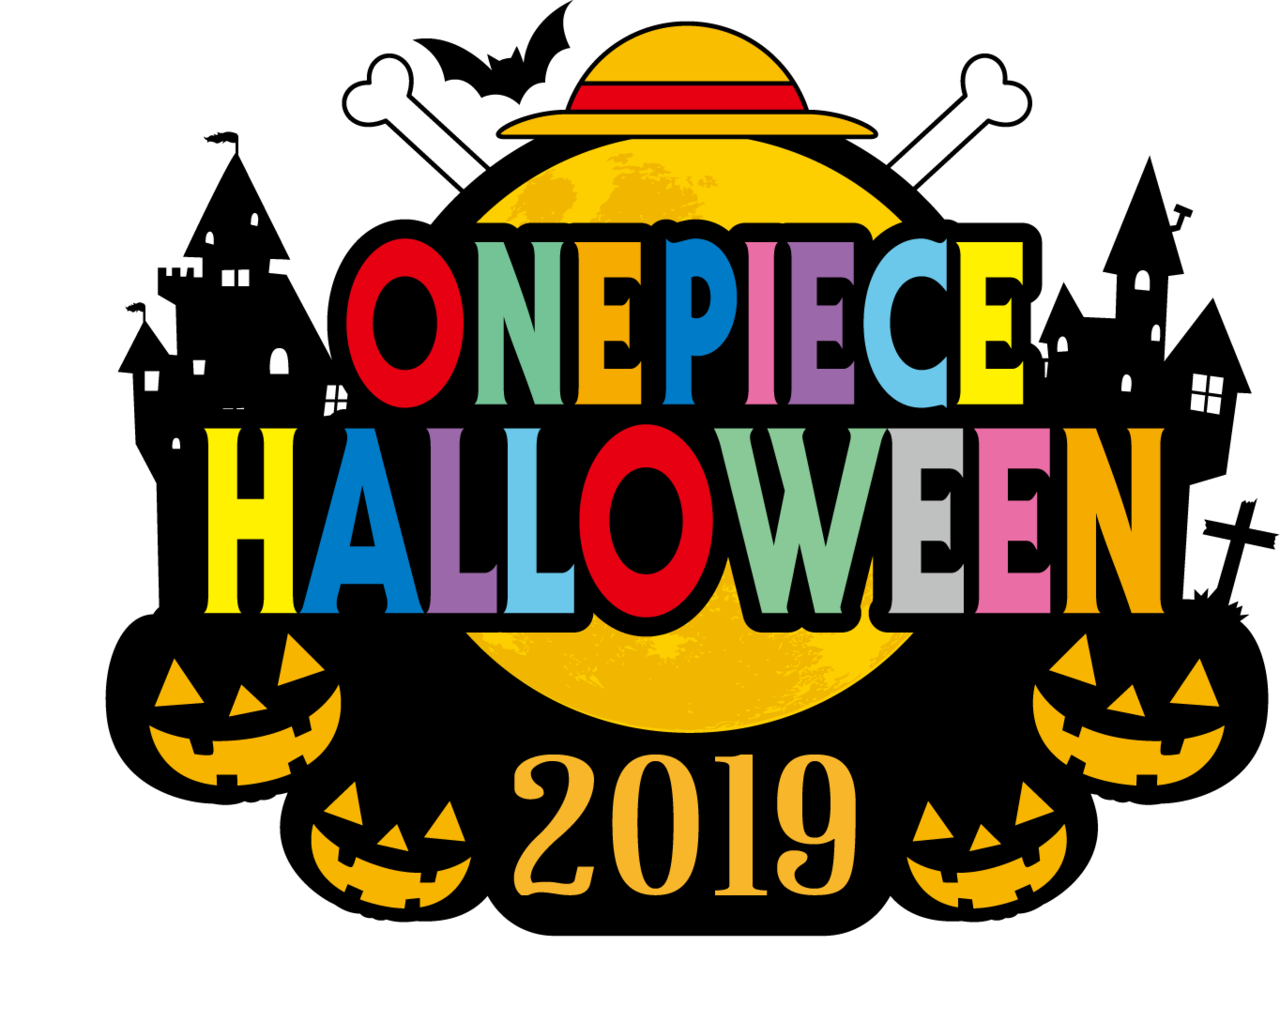 東京ワンピースタワー でハロウィン仮装 One Piece Halloween 19 で盛り上がろう Numan